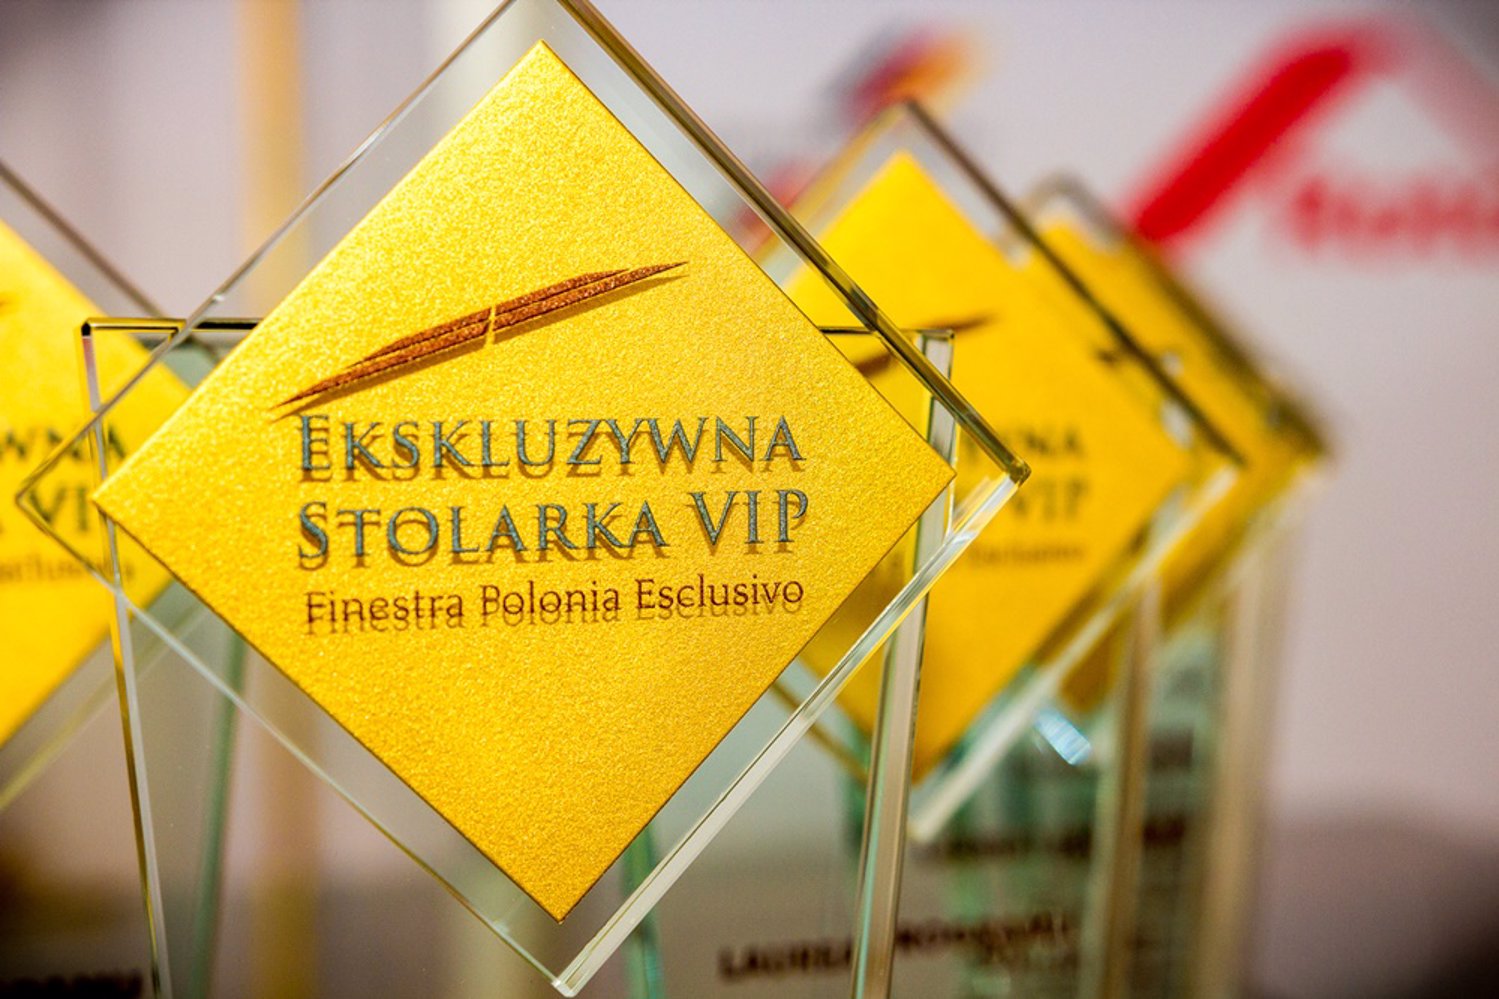 OKNOPLAST doceniony w konkursie Ekskluzywna Stolarka VIP